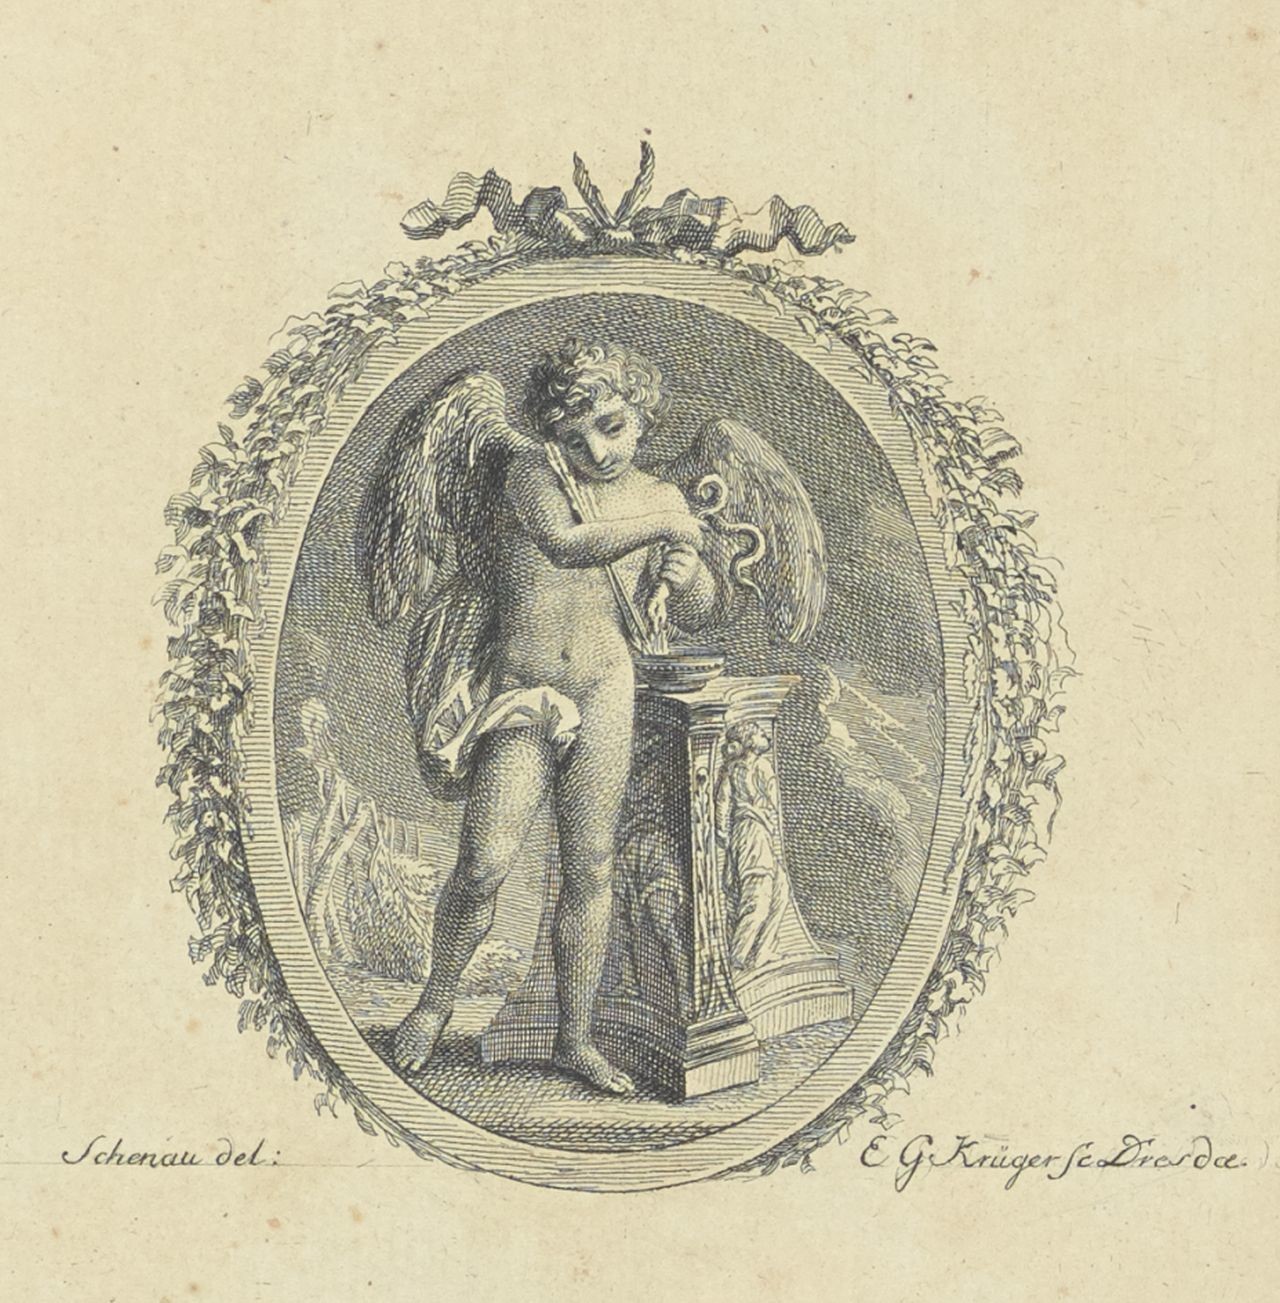 Amor am Altar, ovales Medaillon, bekränzt und mit einer Schleife geschmückt (Deutsches Damast- und Frottiermuseum CC BY-NC-ND)